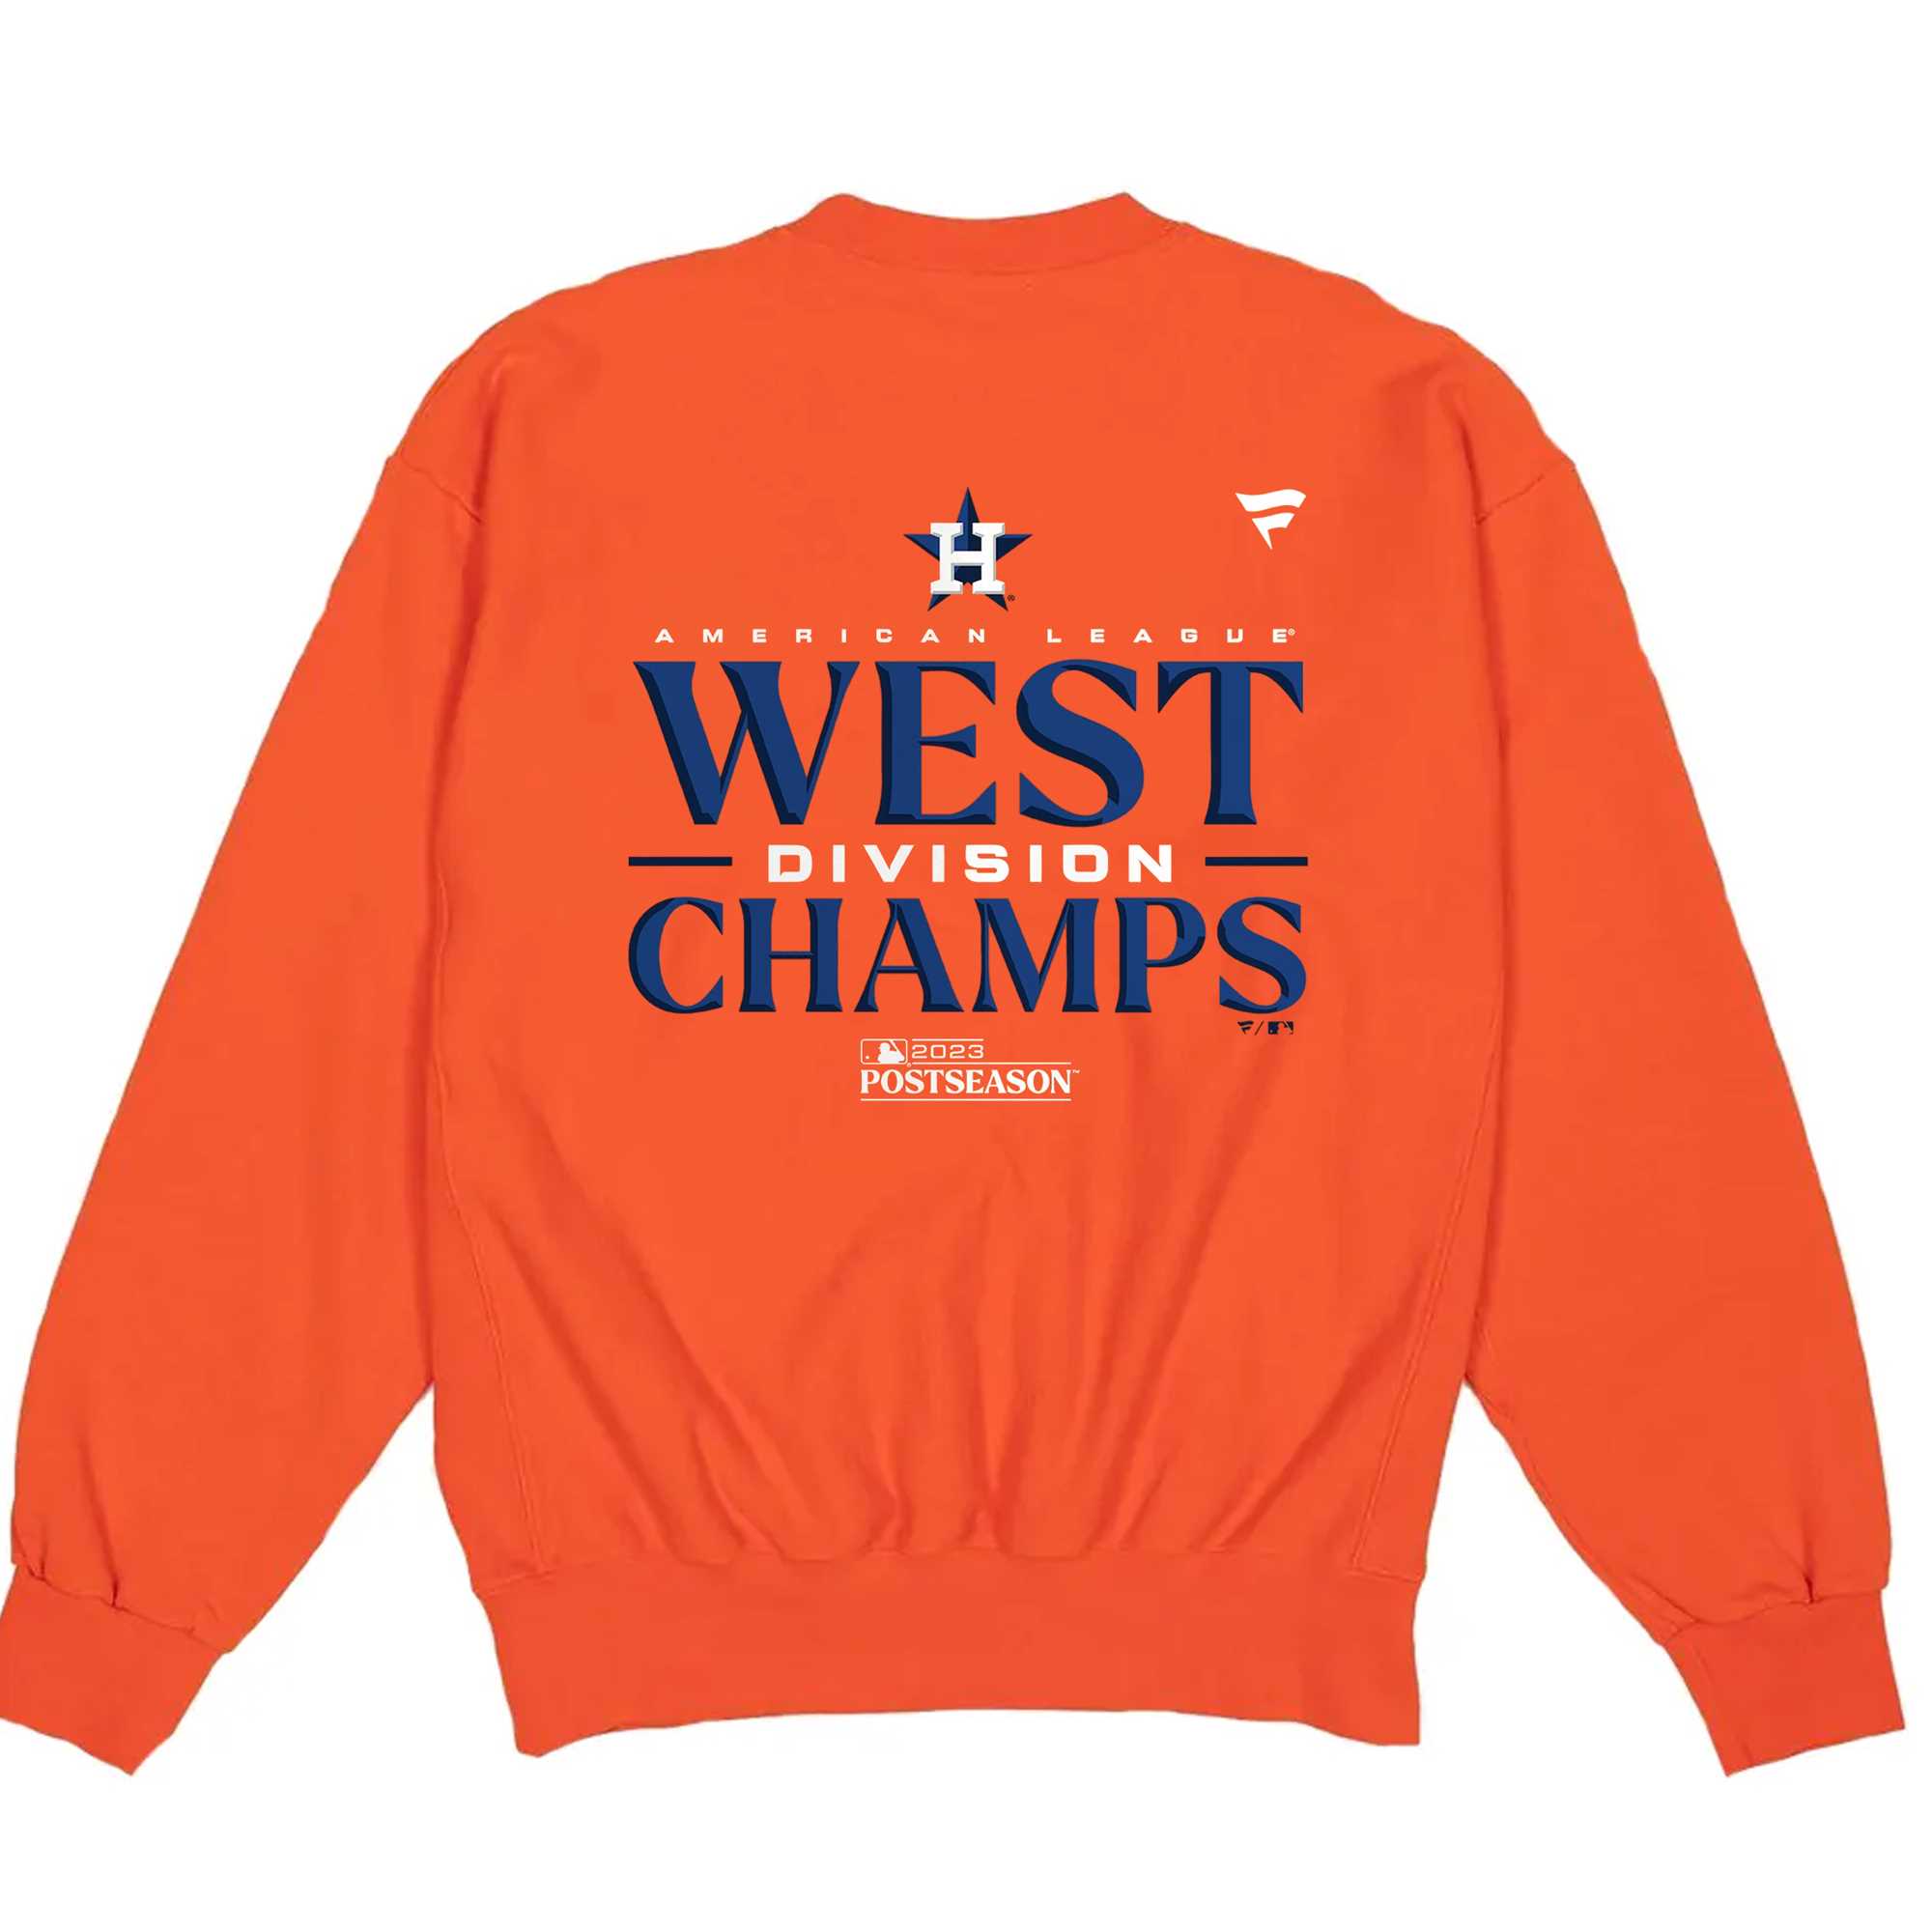 Houston Astros Al West Division Champions 2023 T-shirt